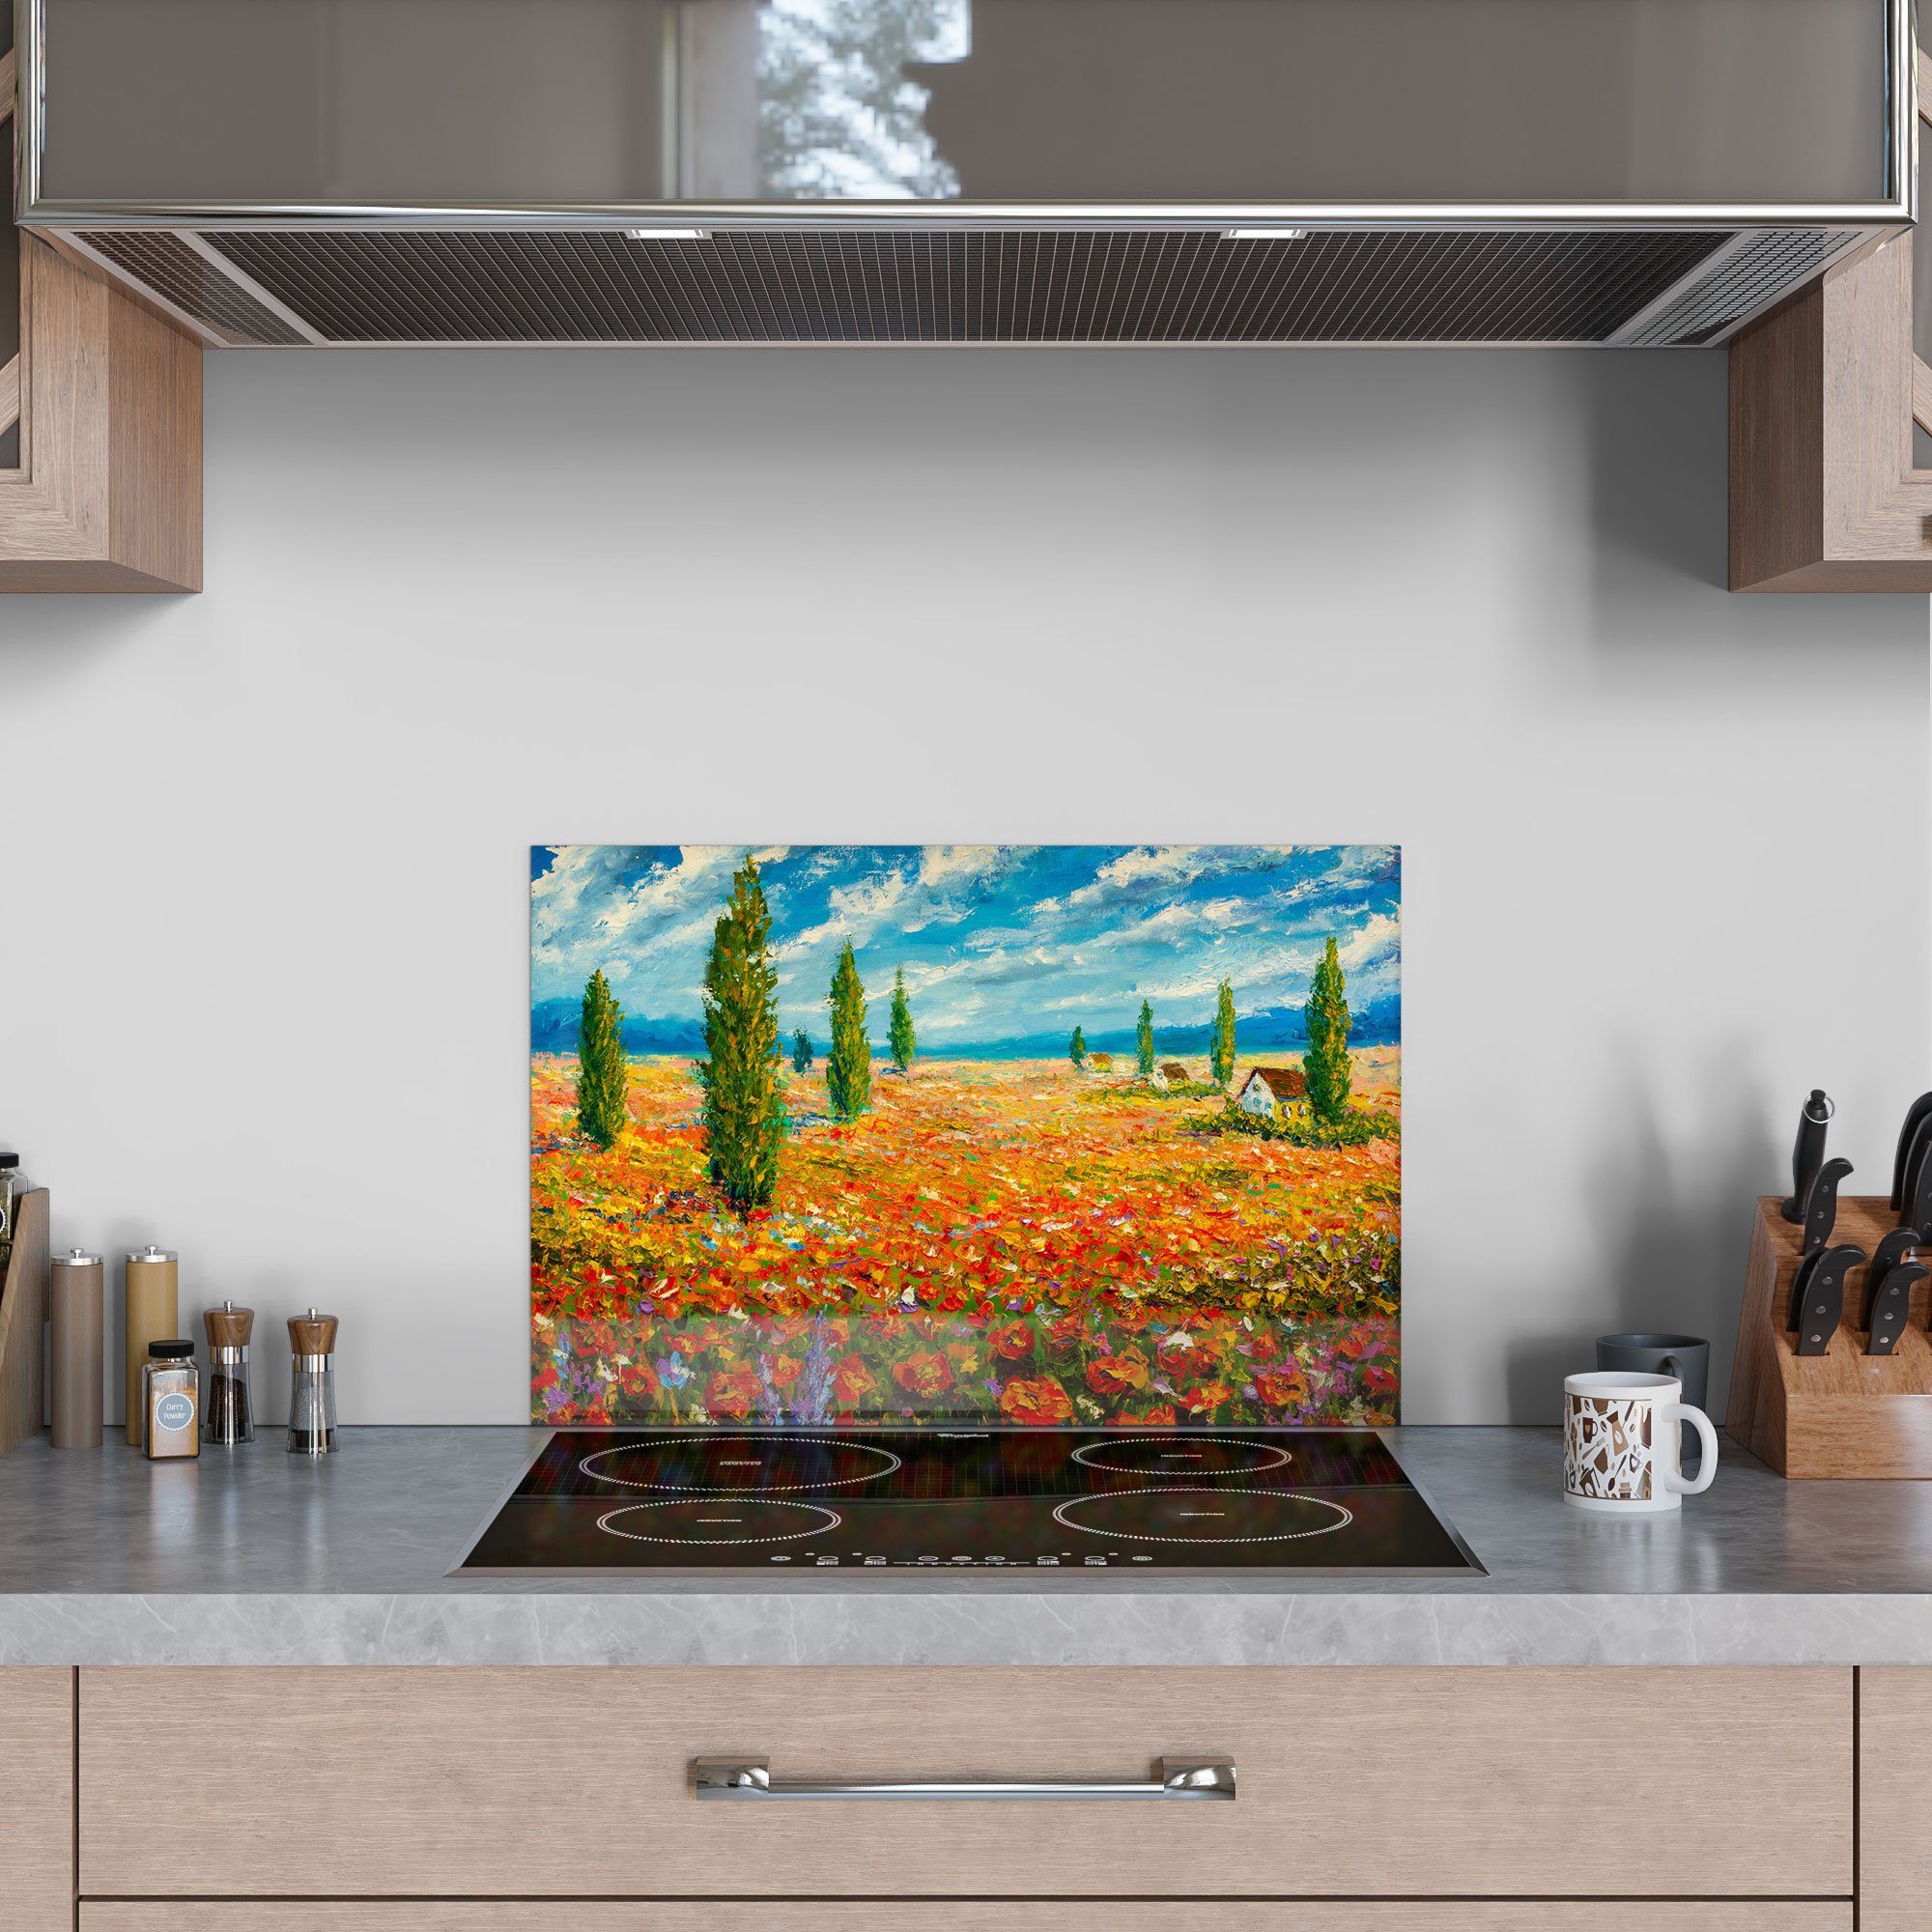 Herdblende im Glas Monet-Stil', Badrückwand DEQORI Küchenrückwand Spritzschutz 'Blumenmeer